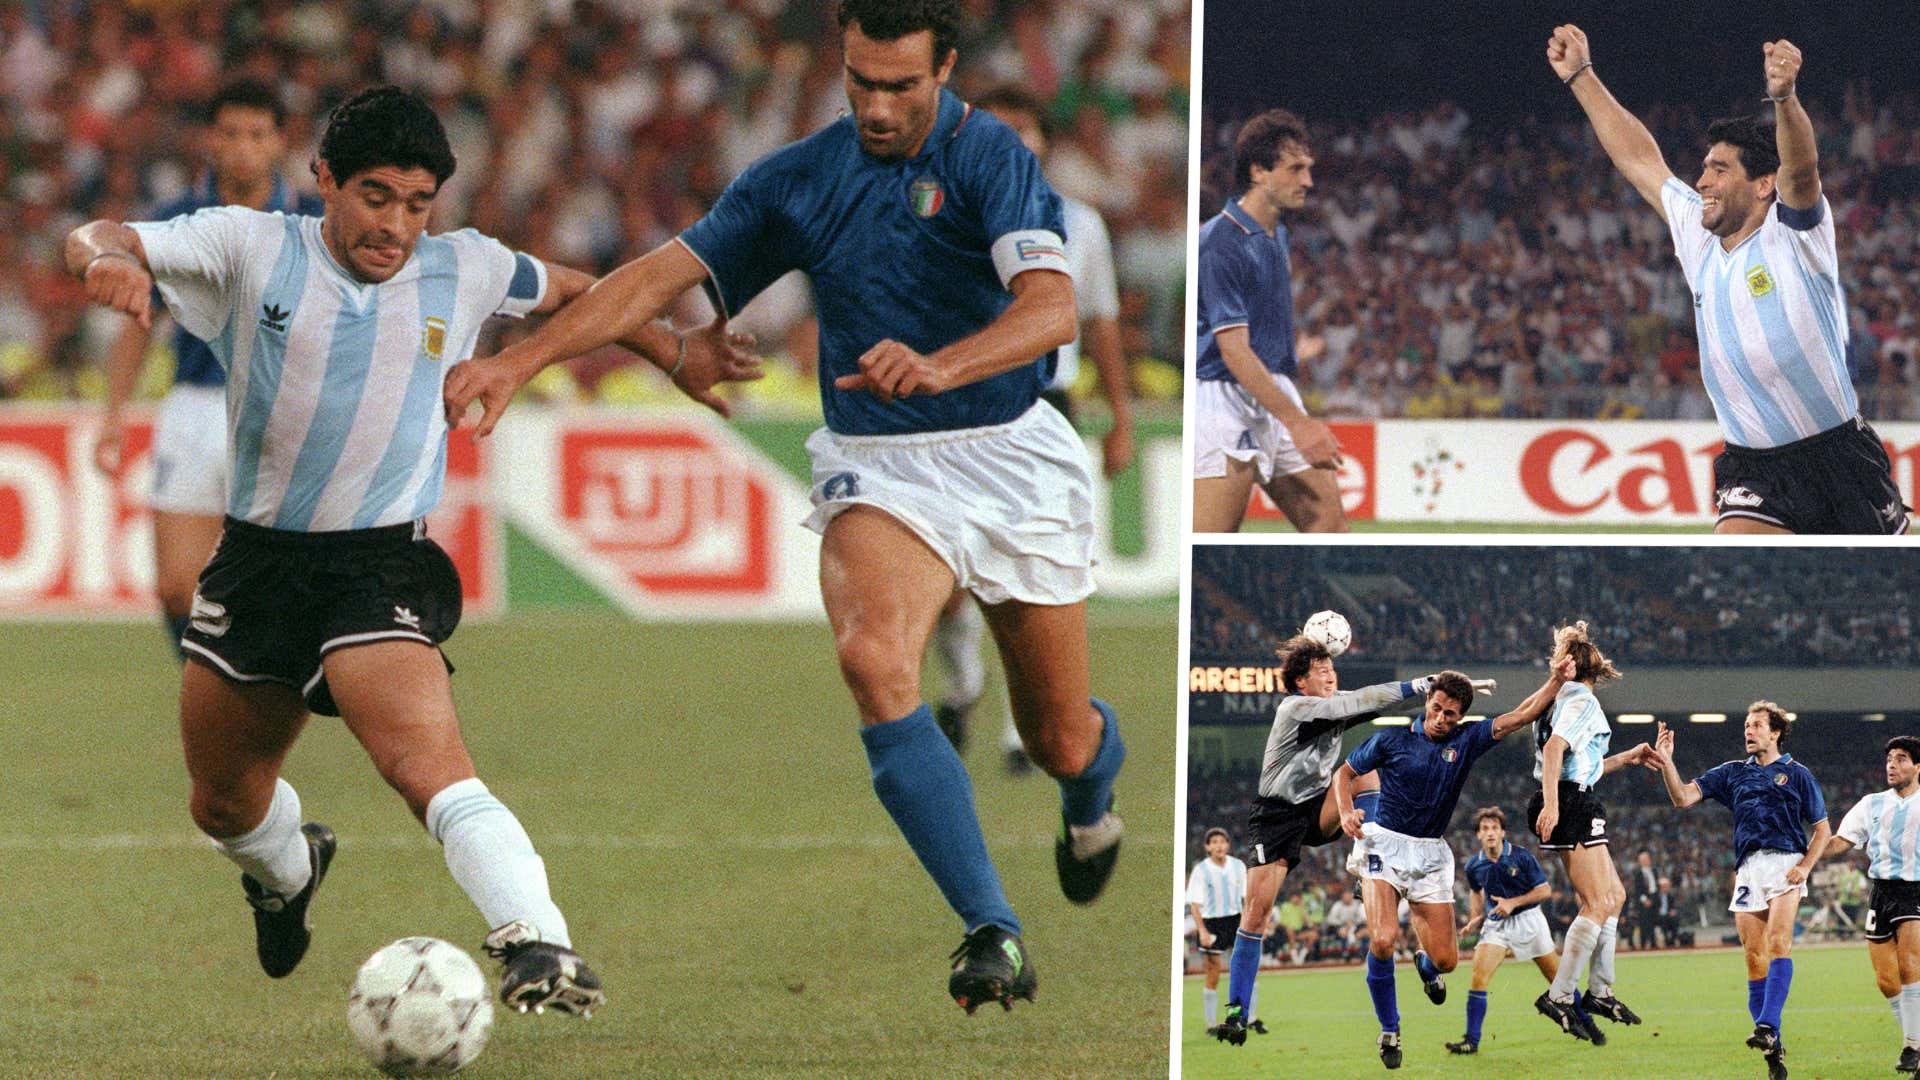 Diego Maradona Argentina Italy 1990 World Cup GFX